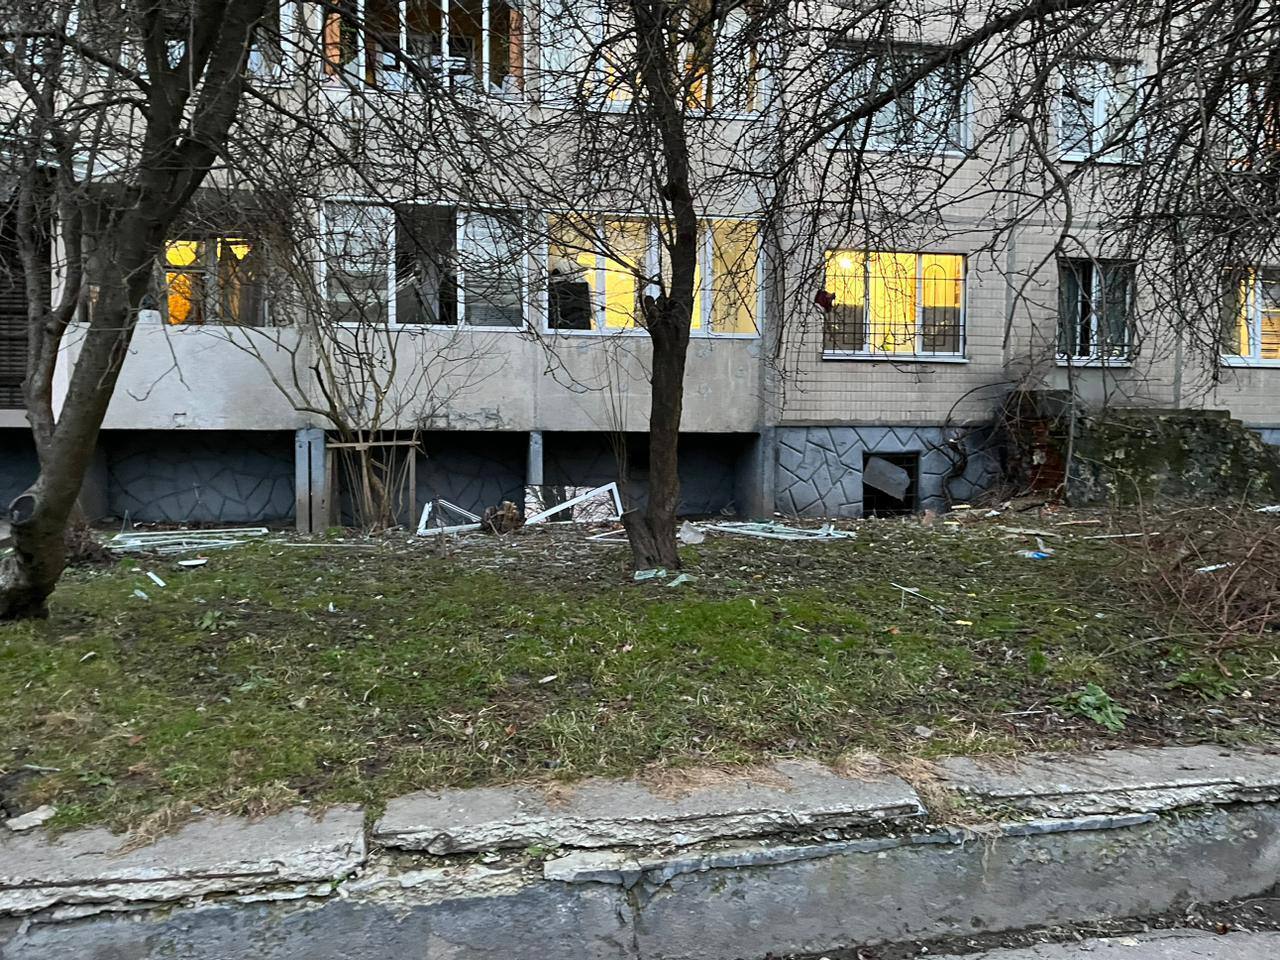 Оккупанты ударили ракетами по Львову: есть попадания и пострадавшие. Фото